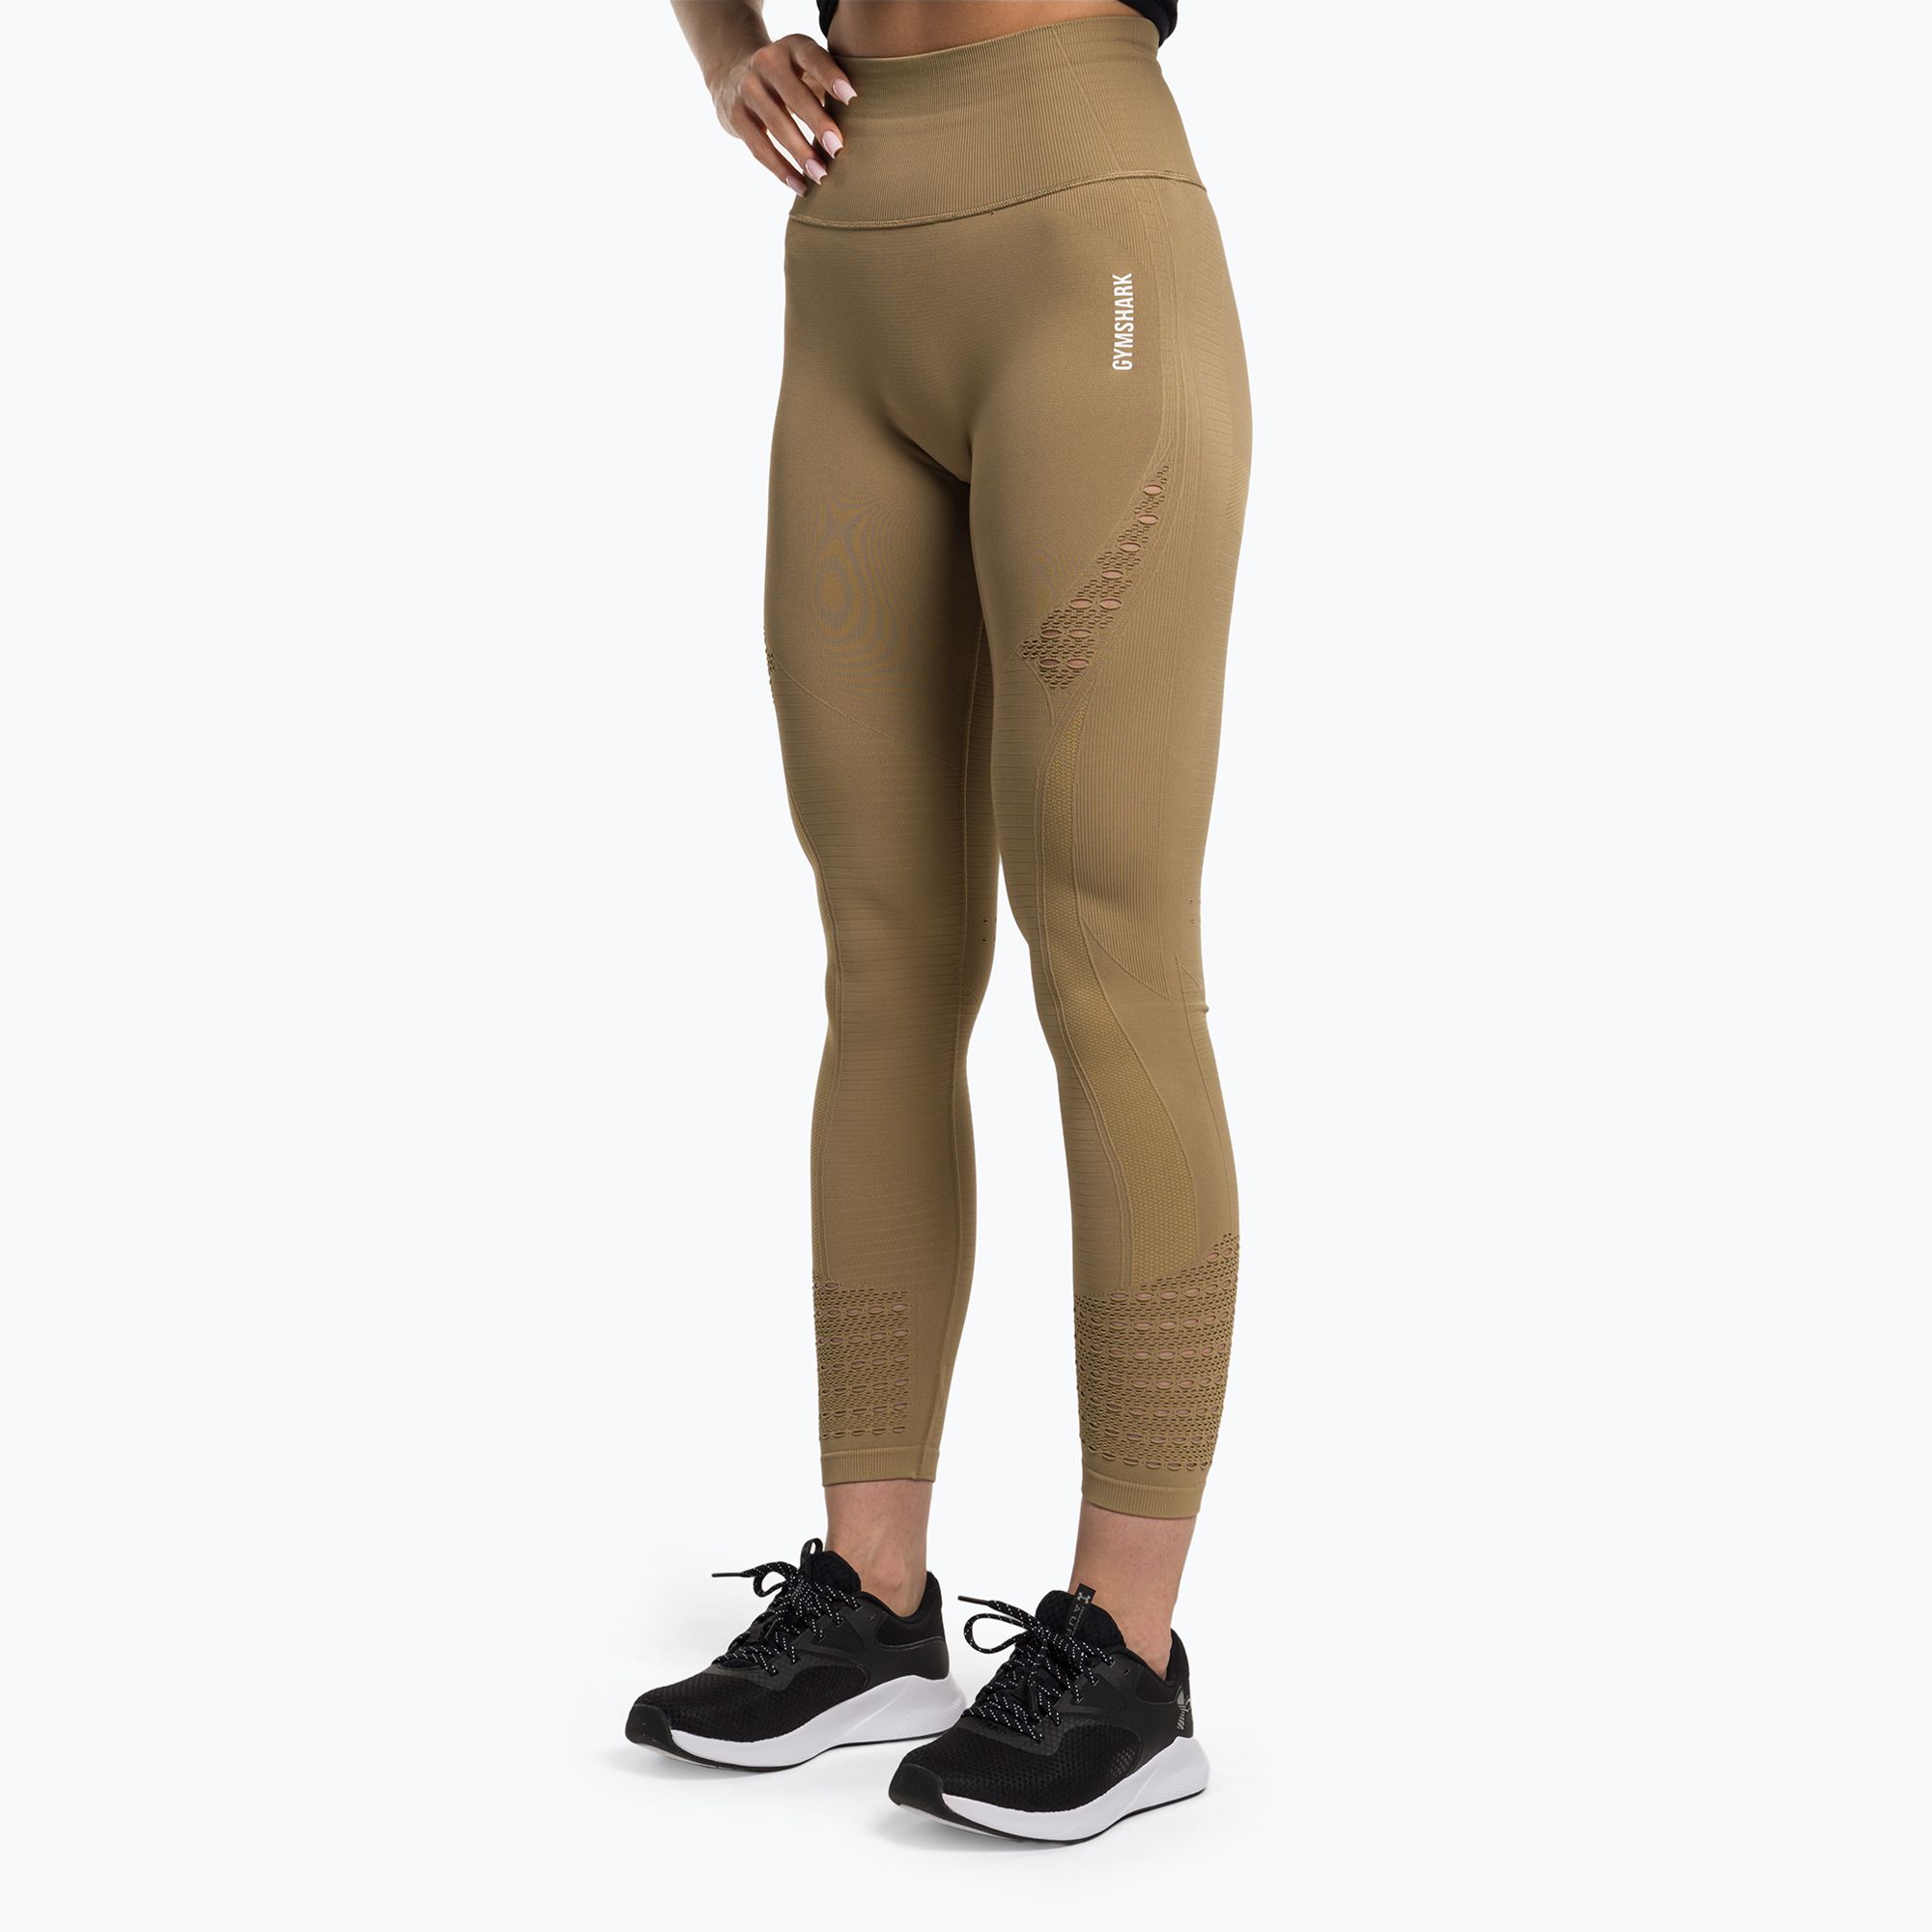 https://sportano.com/img/986c30c27a3d26a3ee16c136f92f4ff5/5/0/5057913523411_1-jpg/women-s-training-leggings-gymshark-energy-seamless-biscotti-brown-white-0.jpg